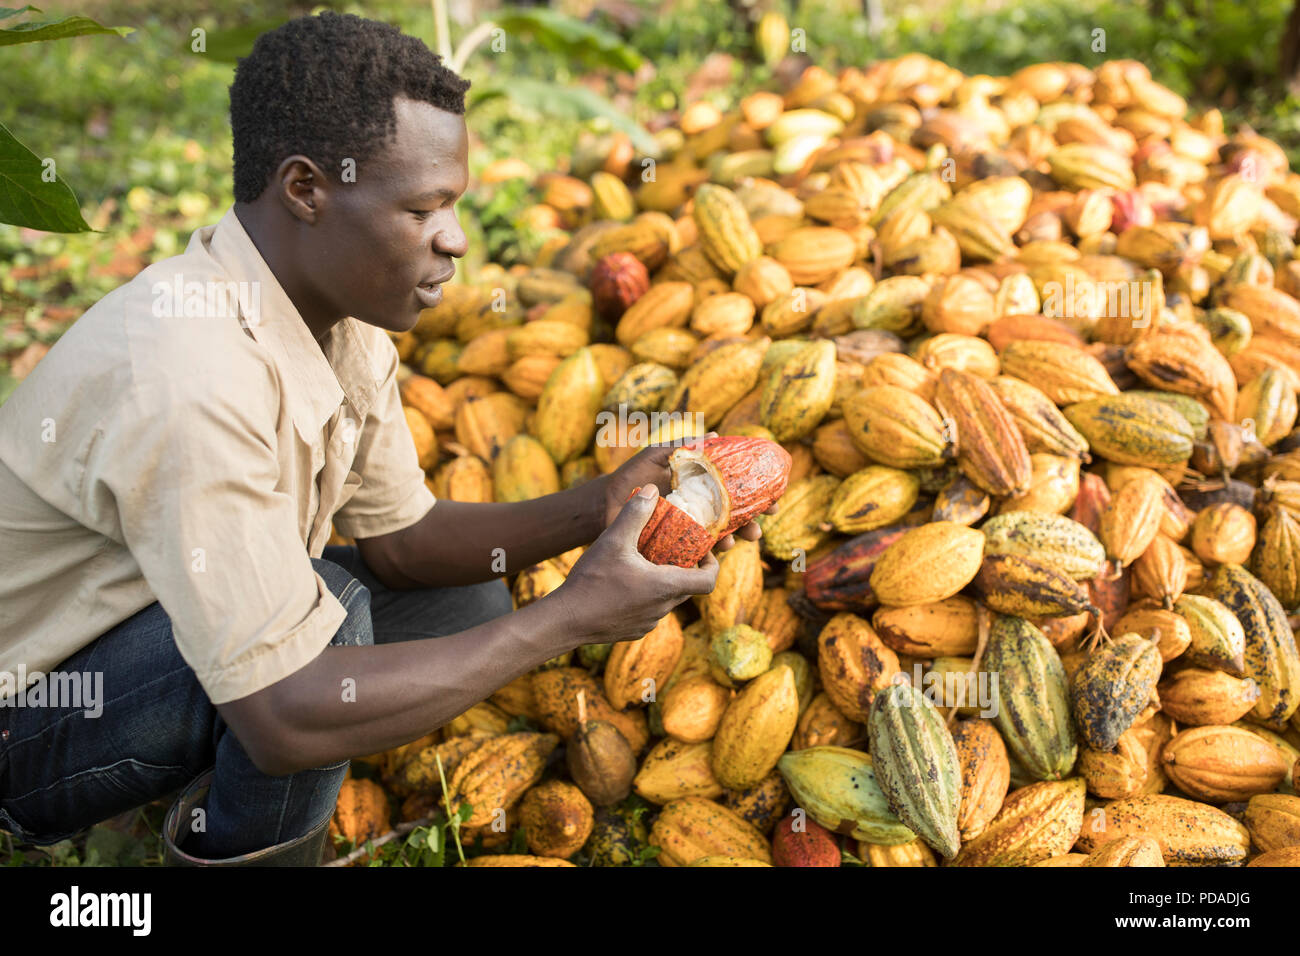 Der Arbeitnehmer teilt eine offene geerntete Kakaobohne pod auf einer Plantage im Distrikt Mukono, Uganda, Ostafrika. Stockfoto